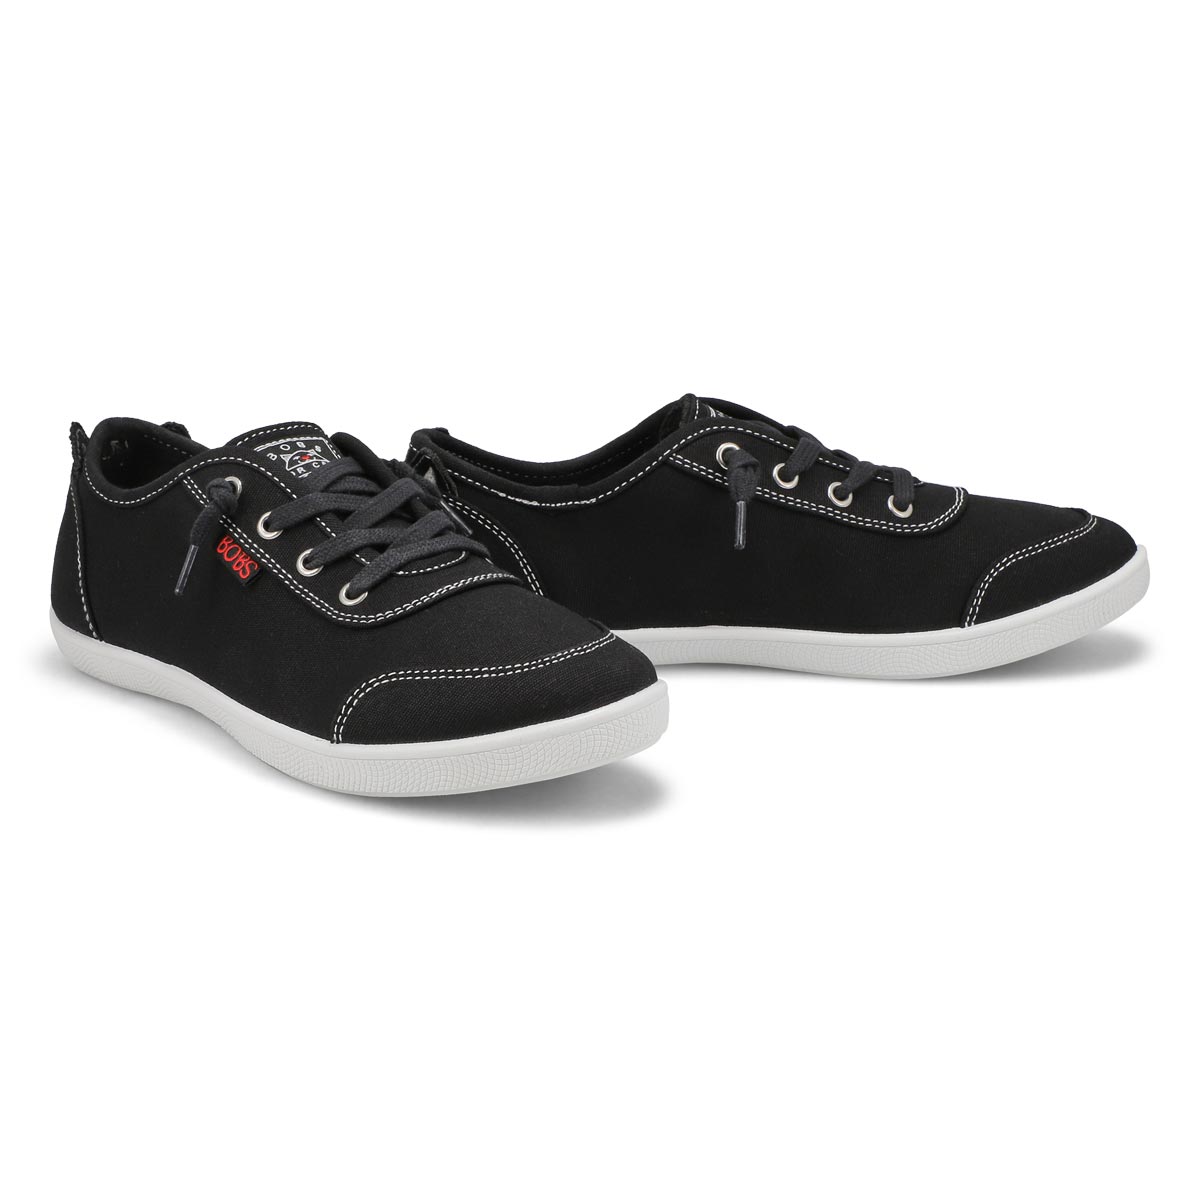 Women's Bobs B Cute Heel Strut Sneaker - Black